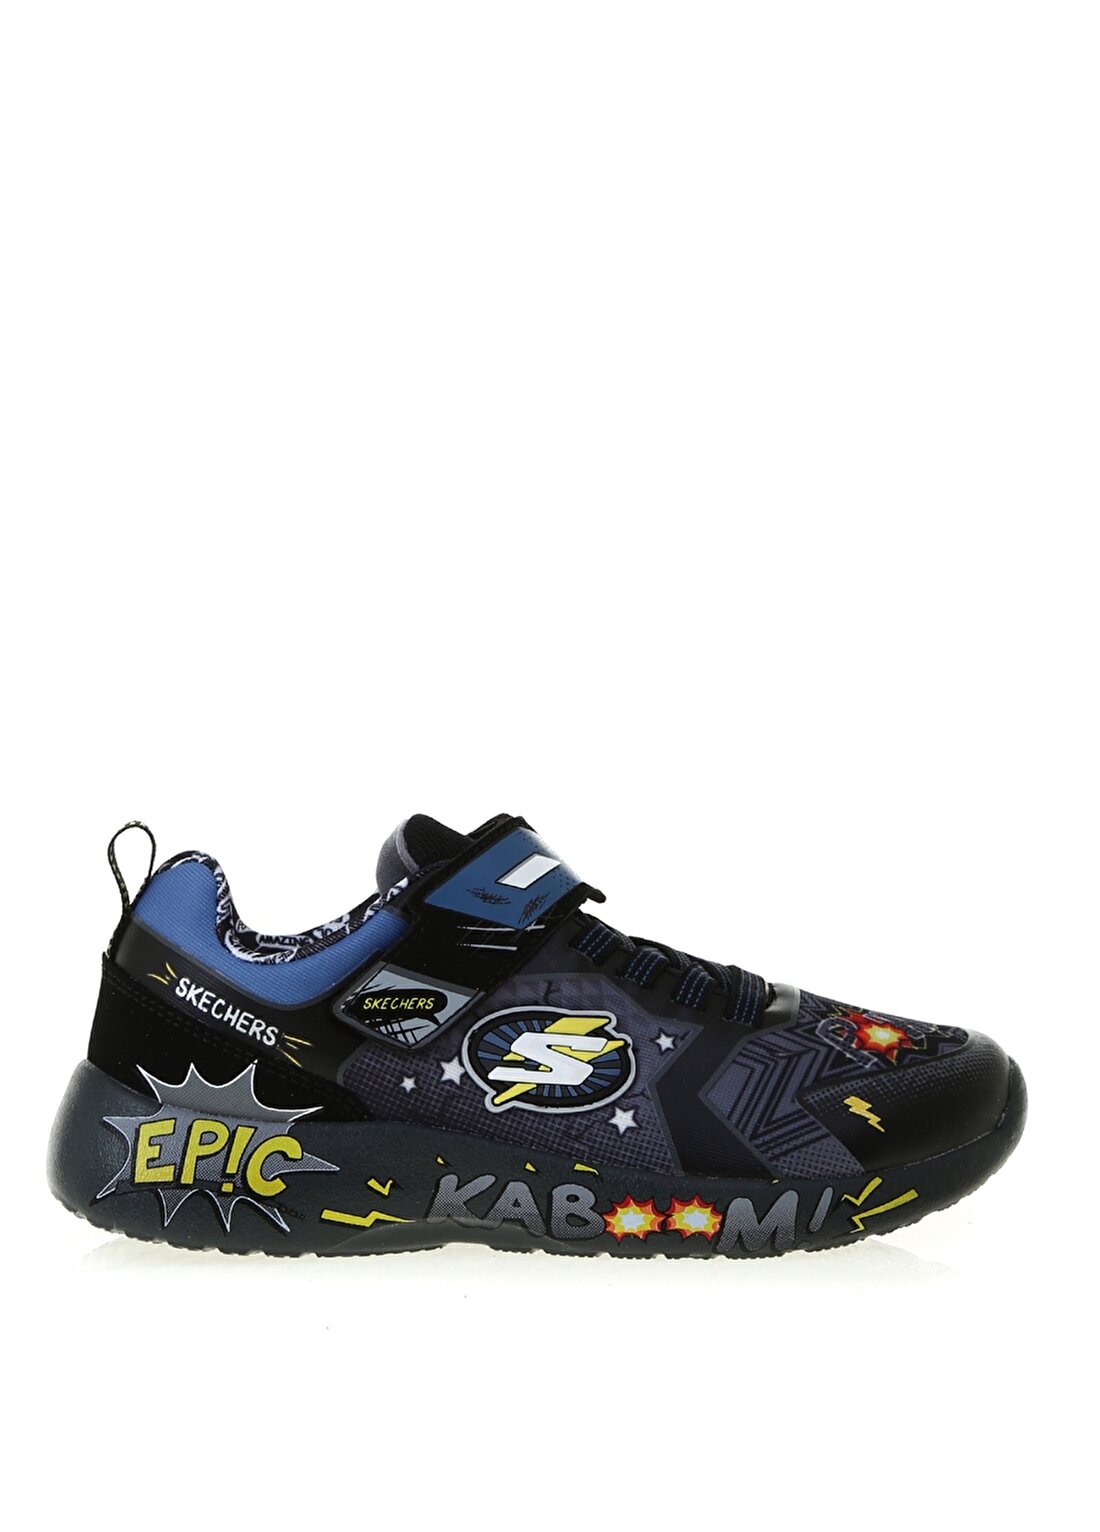 Skechers 402101L Ccbk Dynamight Gri - Siyah Erkek Çocuk Yürüyüş Ayakkabısı